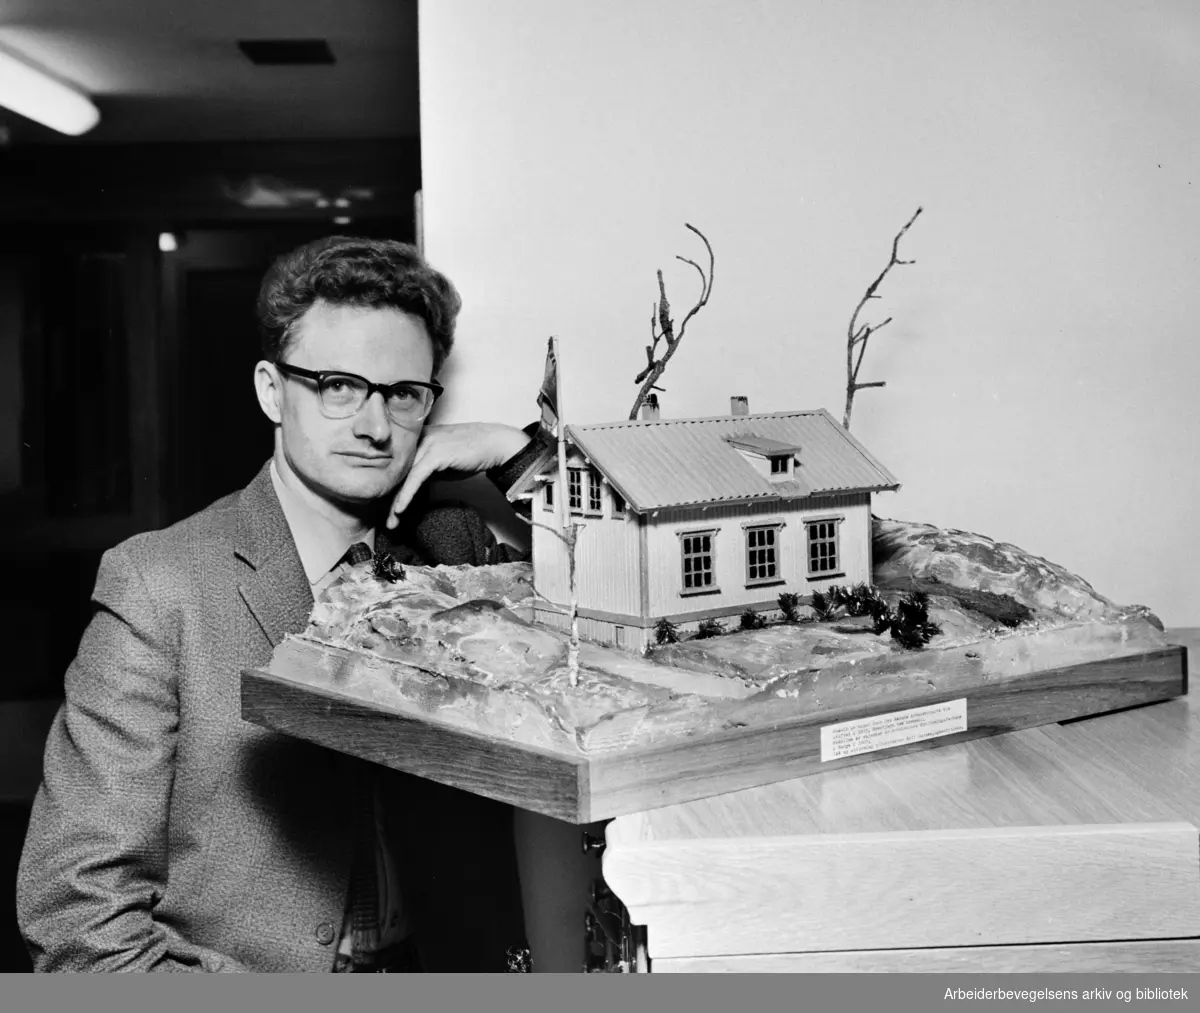 Lederen for Arbeiderbevegelsens arkiv og bibliotek, Arne Kokkvold med en modell av bygningen hvor Arbeiderpartiet ble stiftet (22. august 1887). Modellen ble laget av Rolf Larsen. Foto Juni 1967